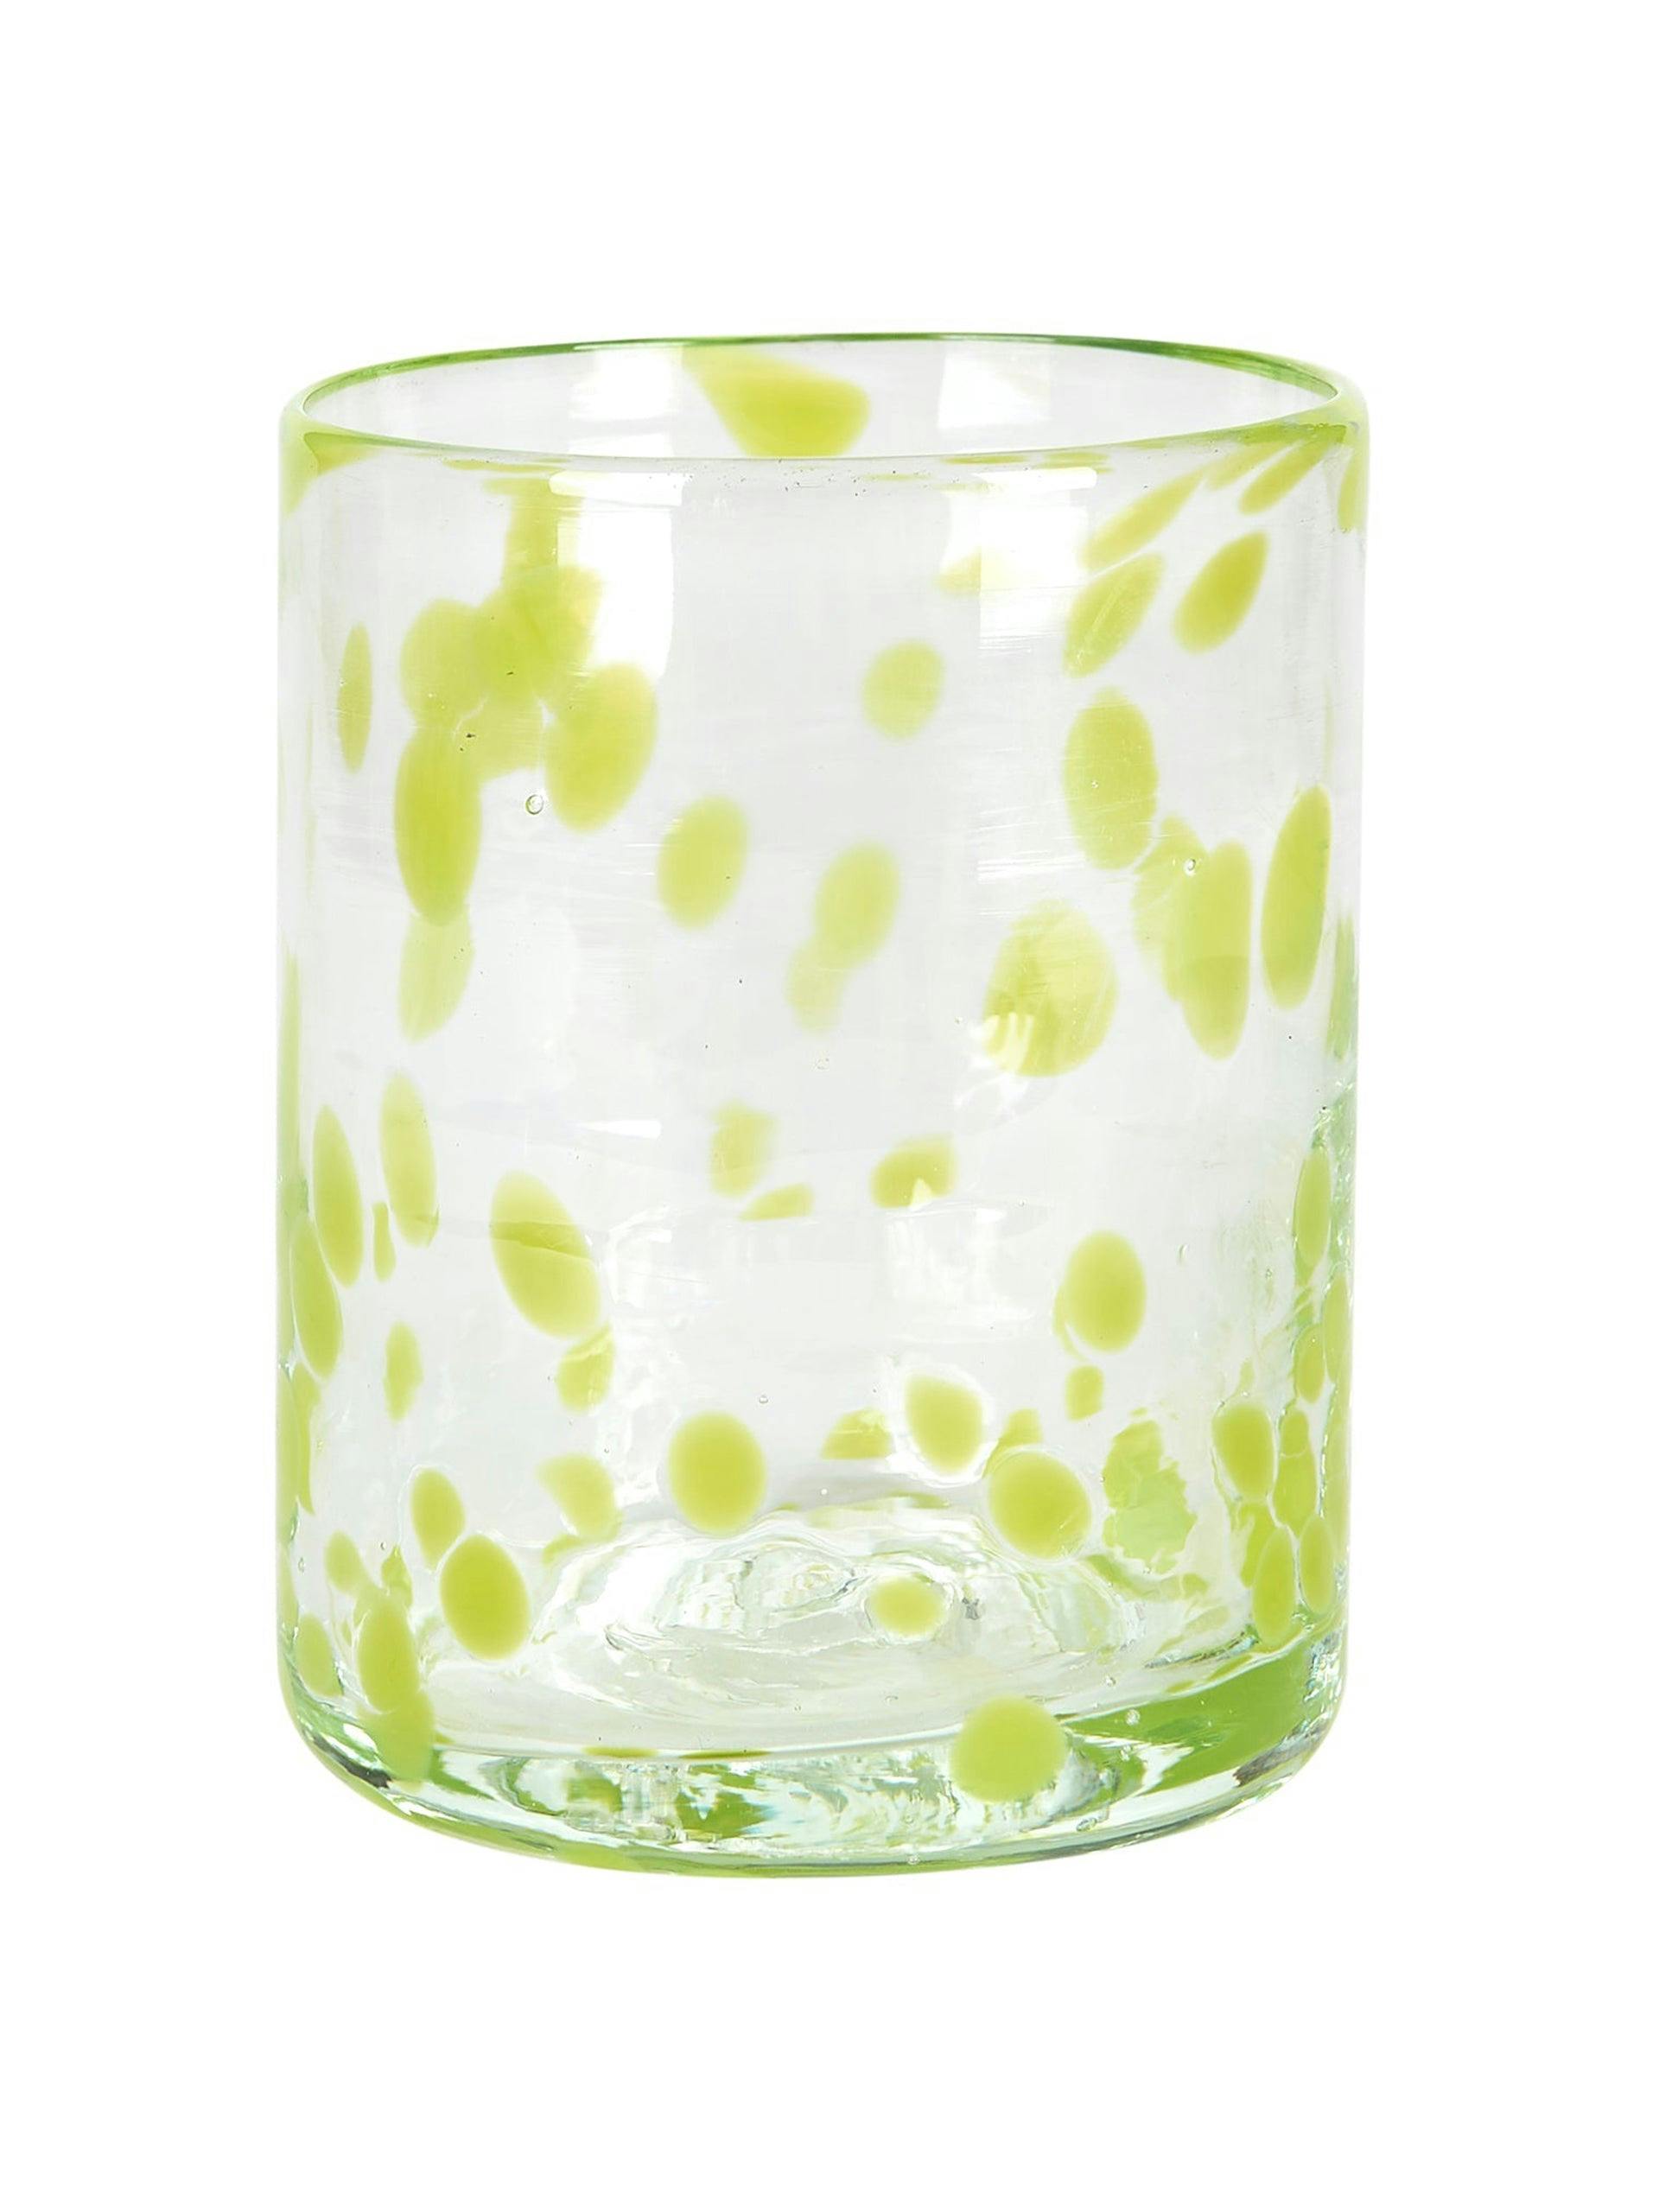 Lime green confetti Murano glass tumbler